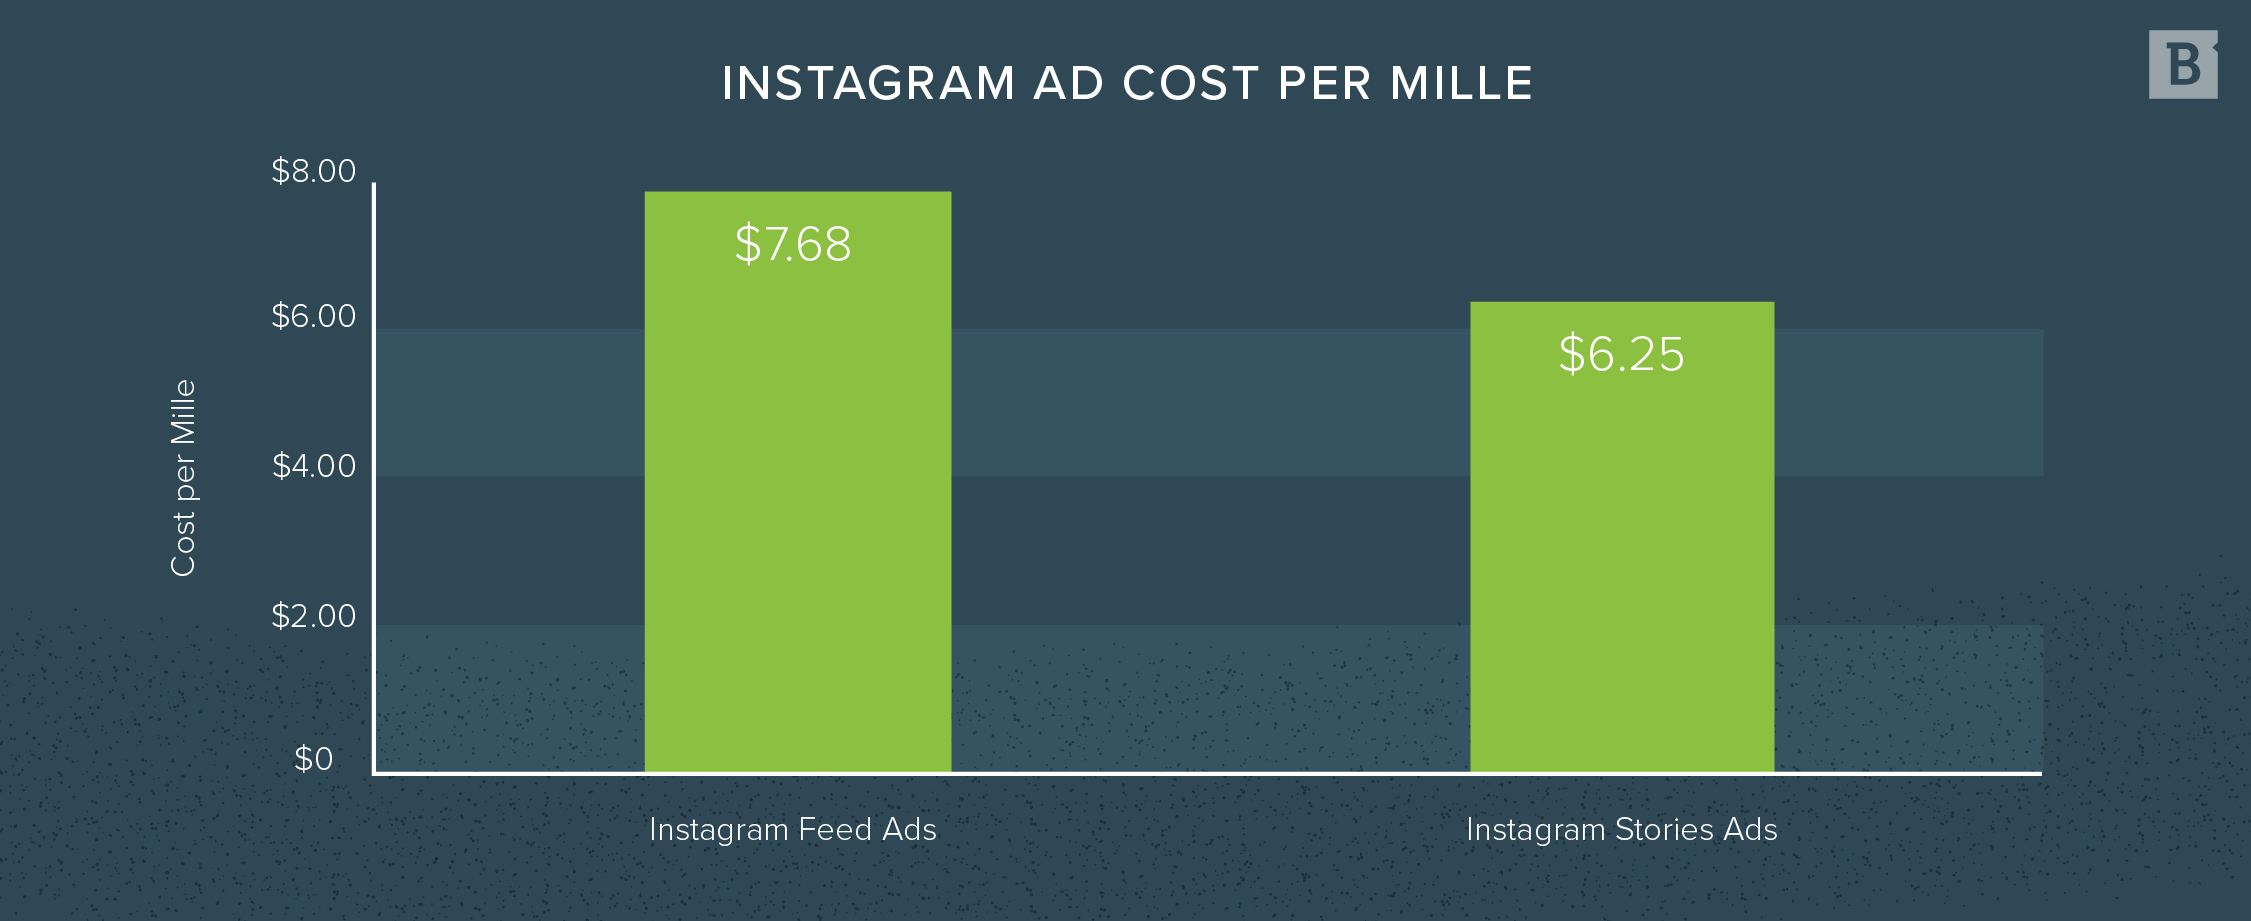 Instagram每英里广告成本